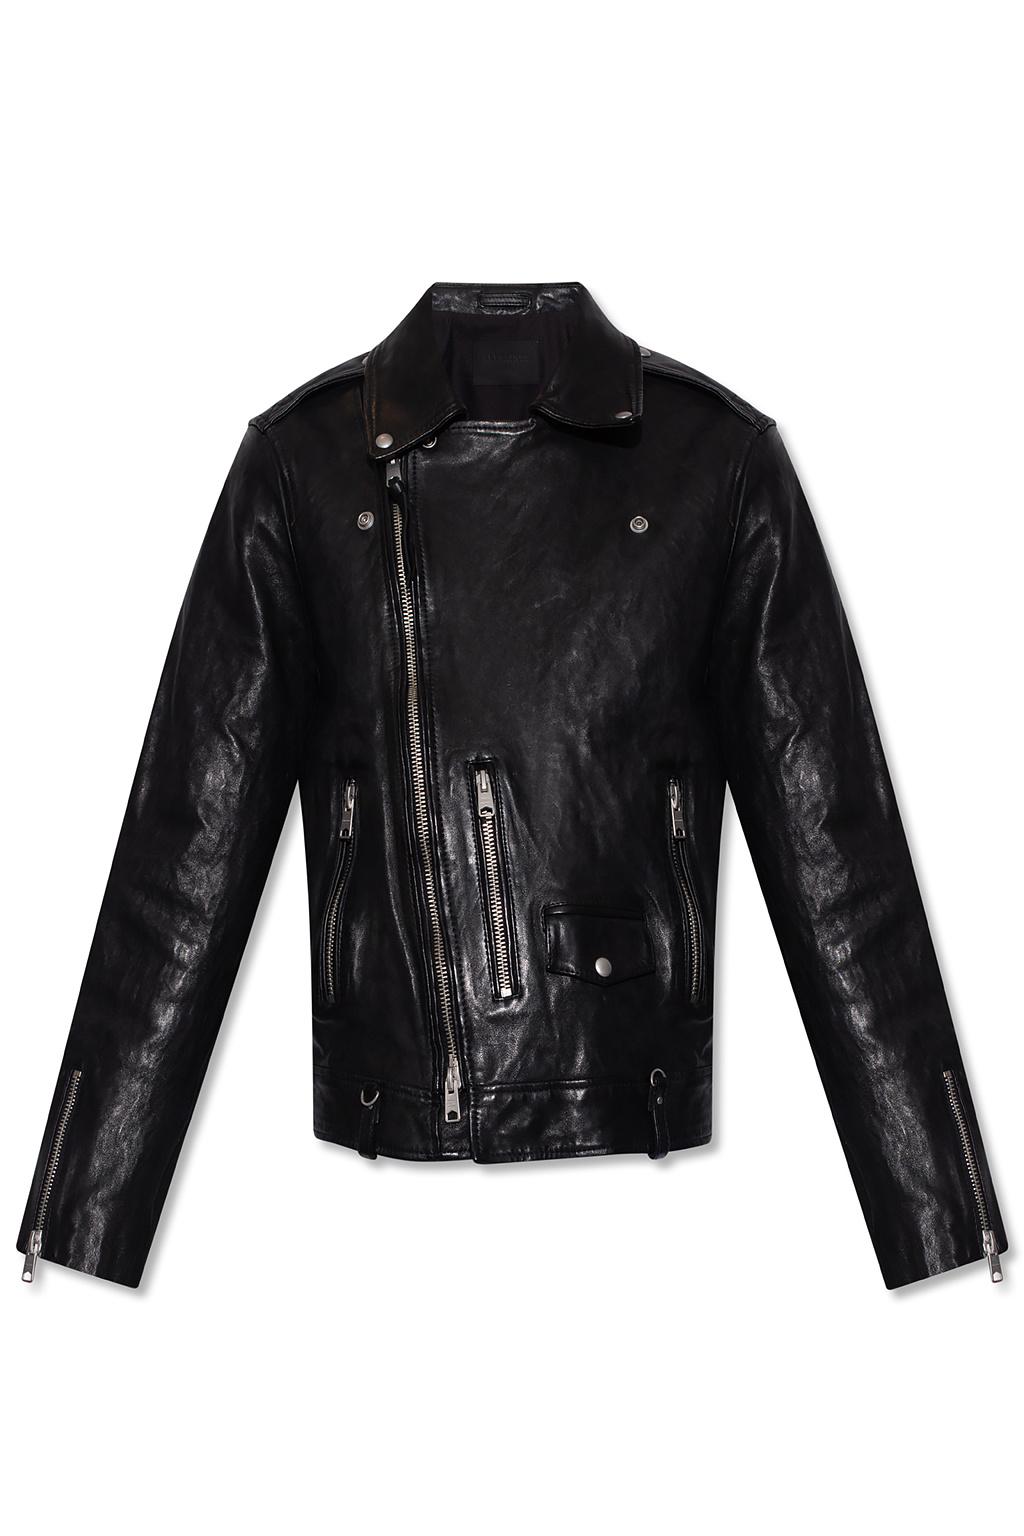 AllSaints 'sora' Leather Biker Jacket in Black for Men | Lyst